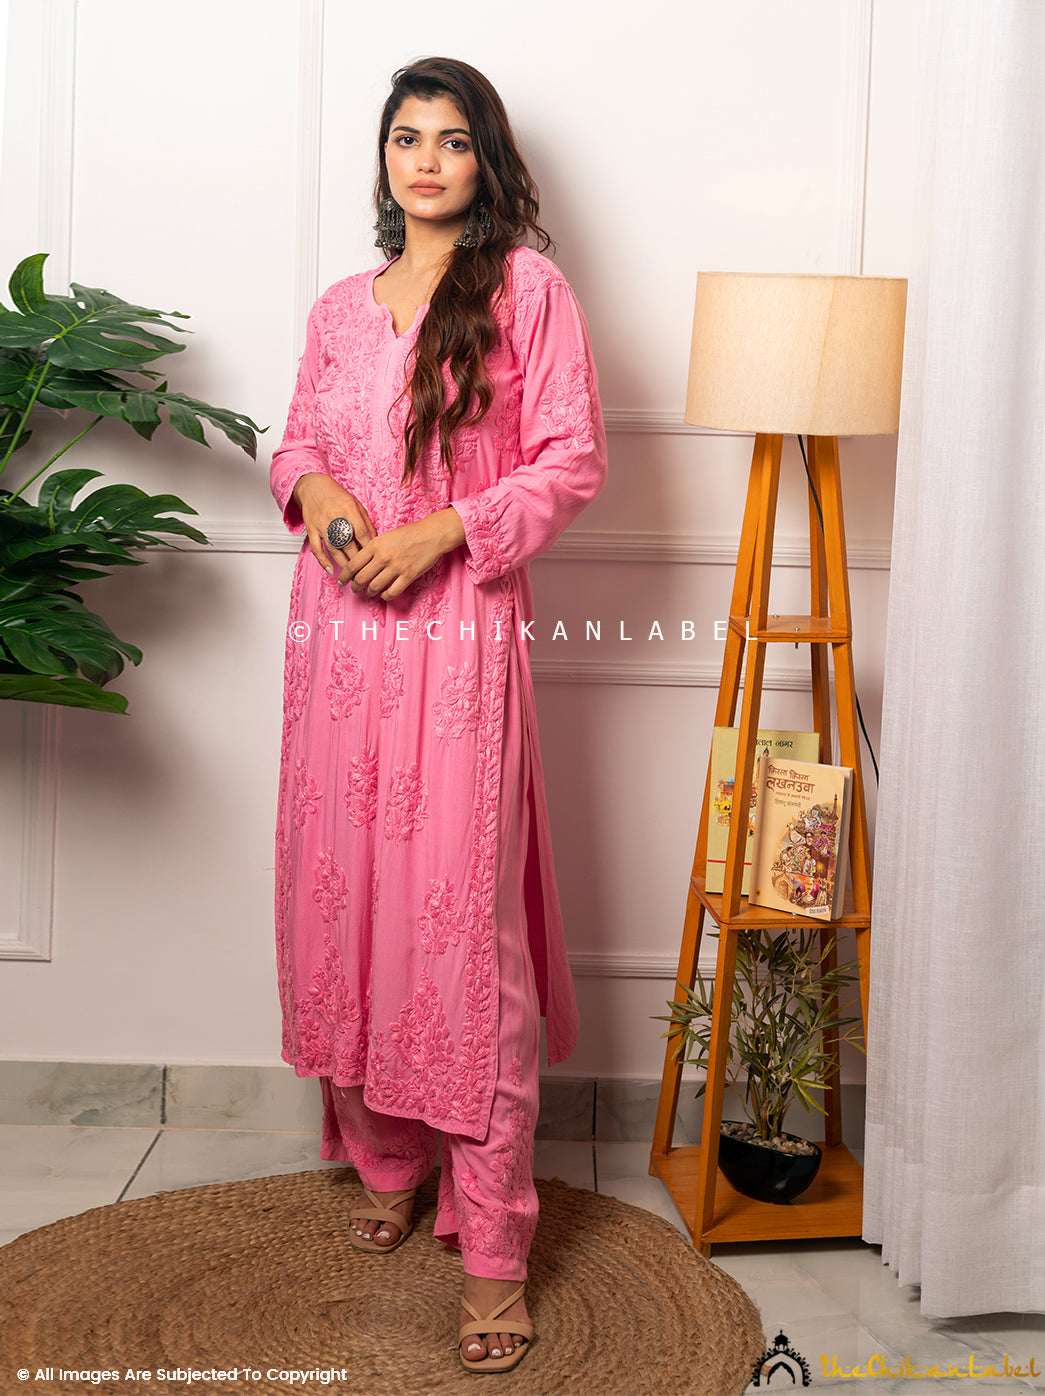 Buy chikankari kurti palazzo set online at best prices, Shop authentic Lucknow chikankari handmade kurta kurti palazzo set in modal fabric for women 4